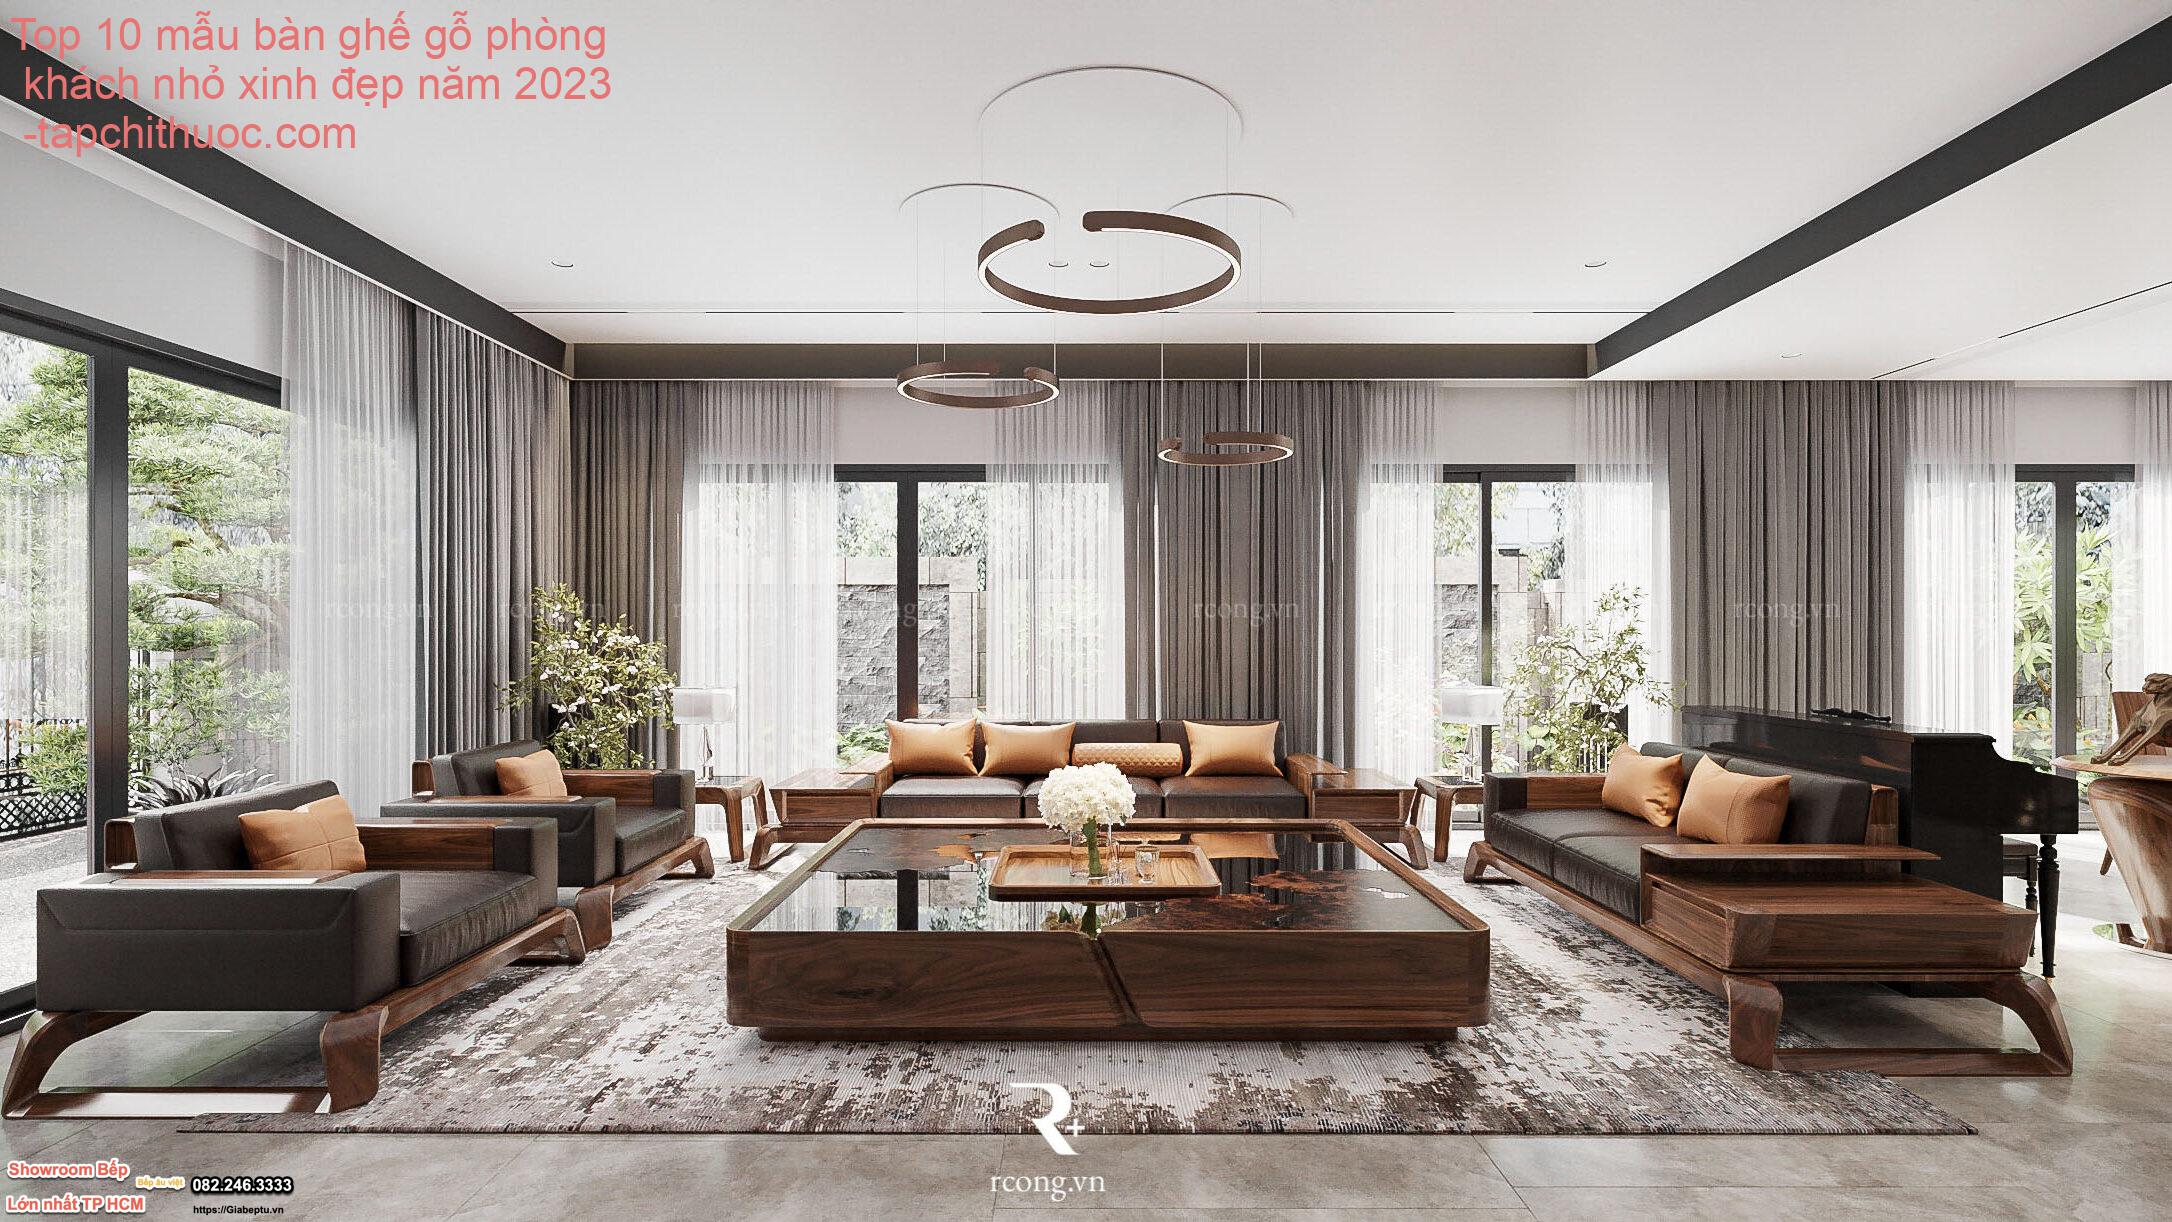 Top 10 mẫu bàn ghế gỗ phòng khách nhỏ xinh đẹp năm 2023